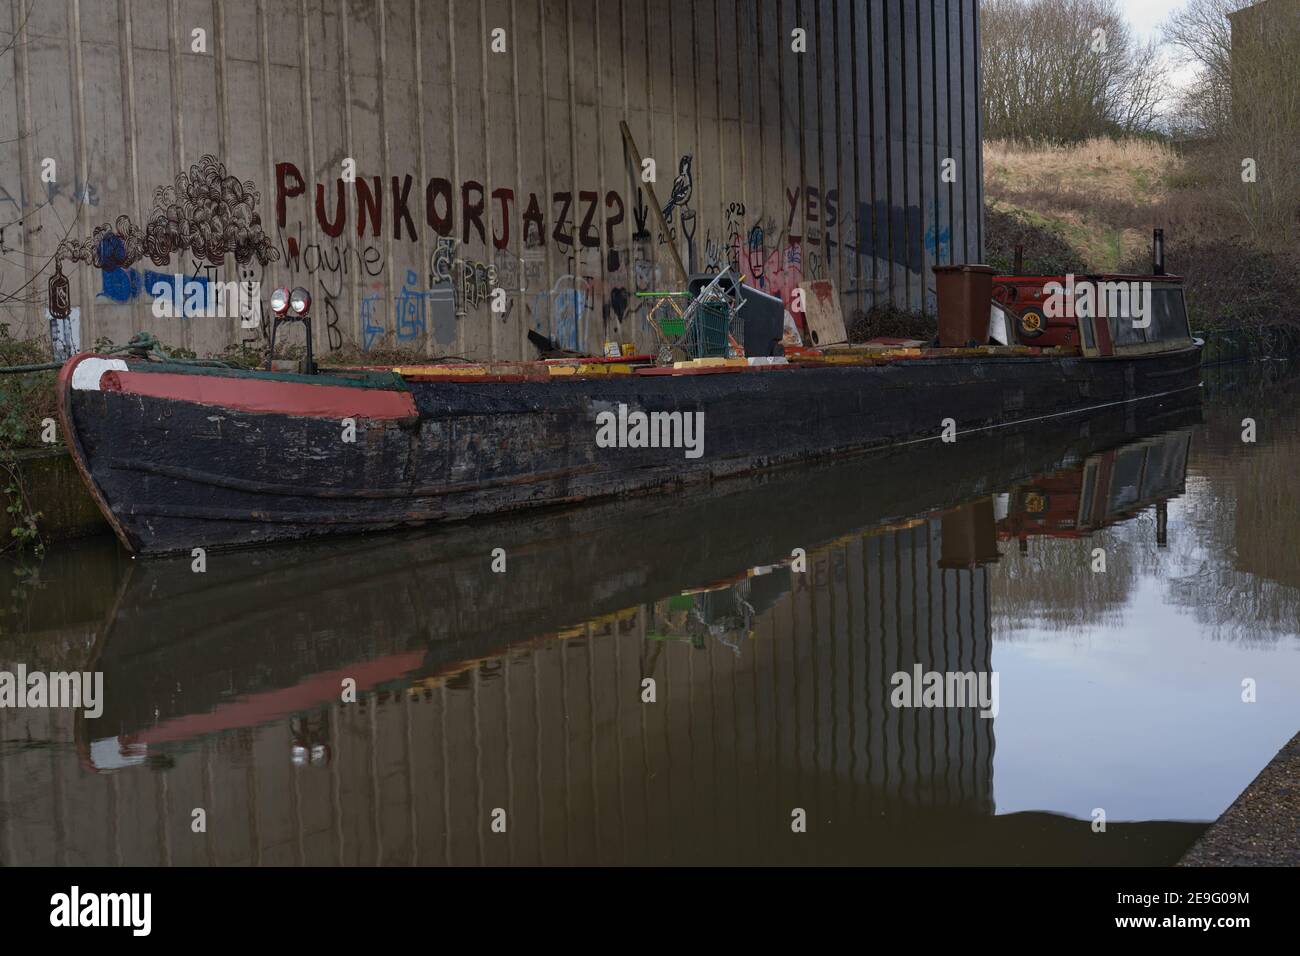 Imbarcazione canale hippy con un bel sfondo di graffiti Incluse le parole Punk o Jazz Foto Stock